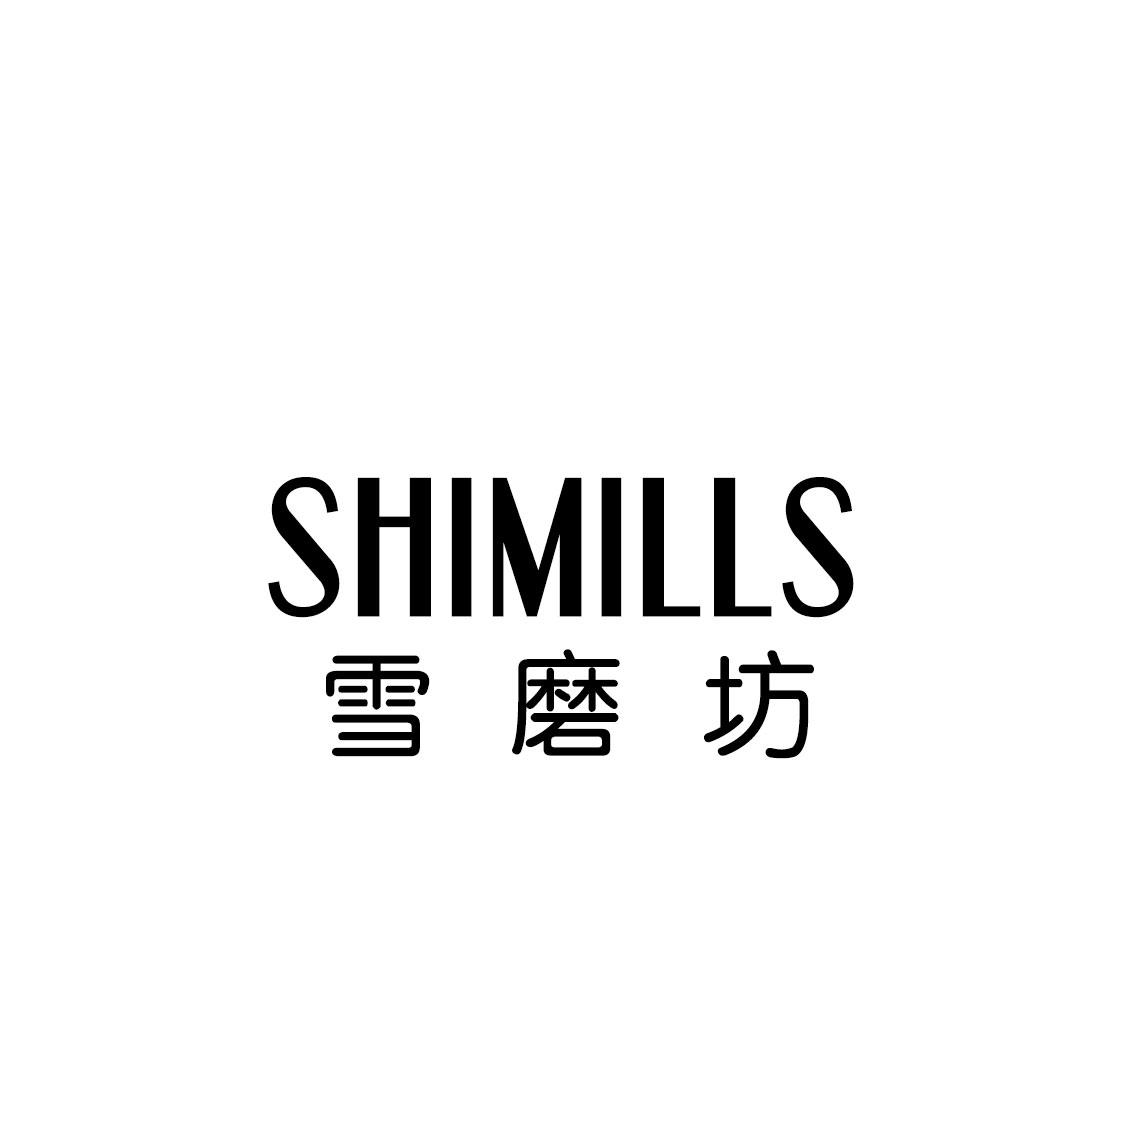 雪磨坊 SHIMILLS